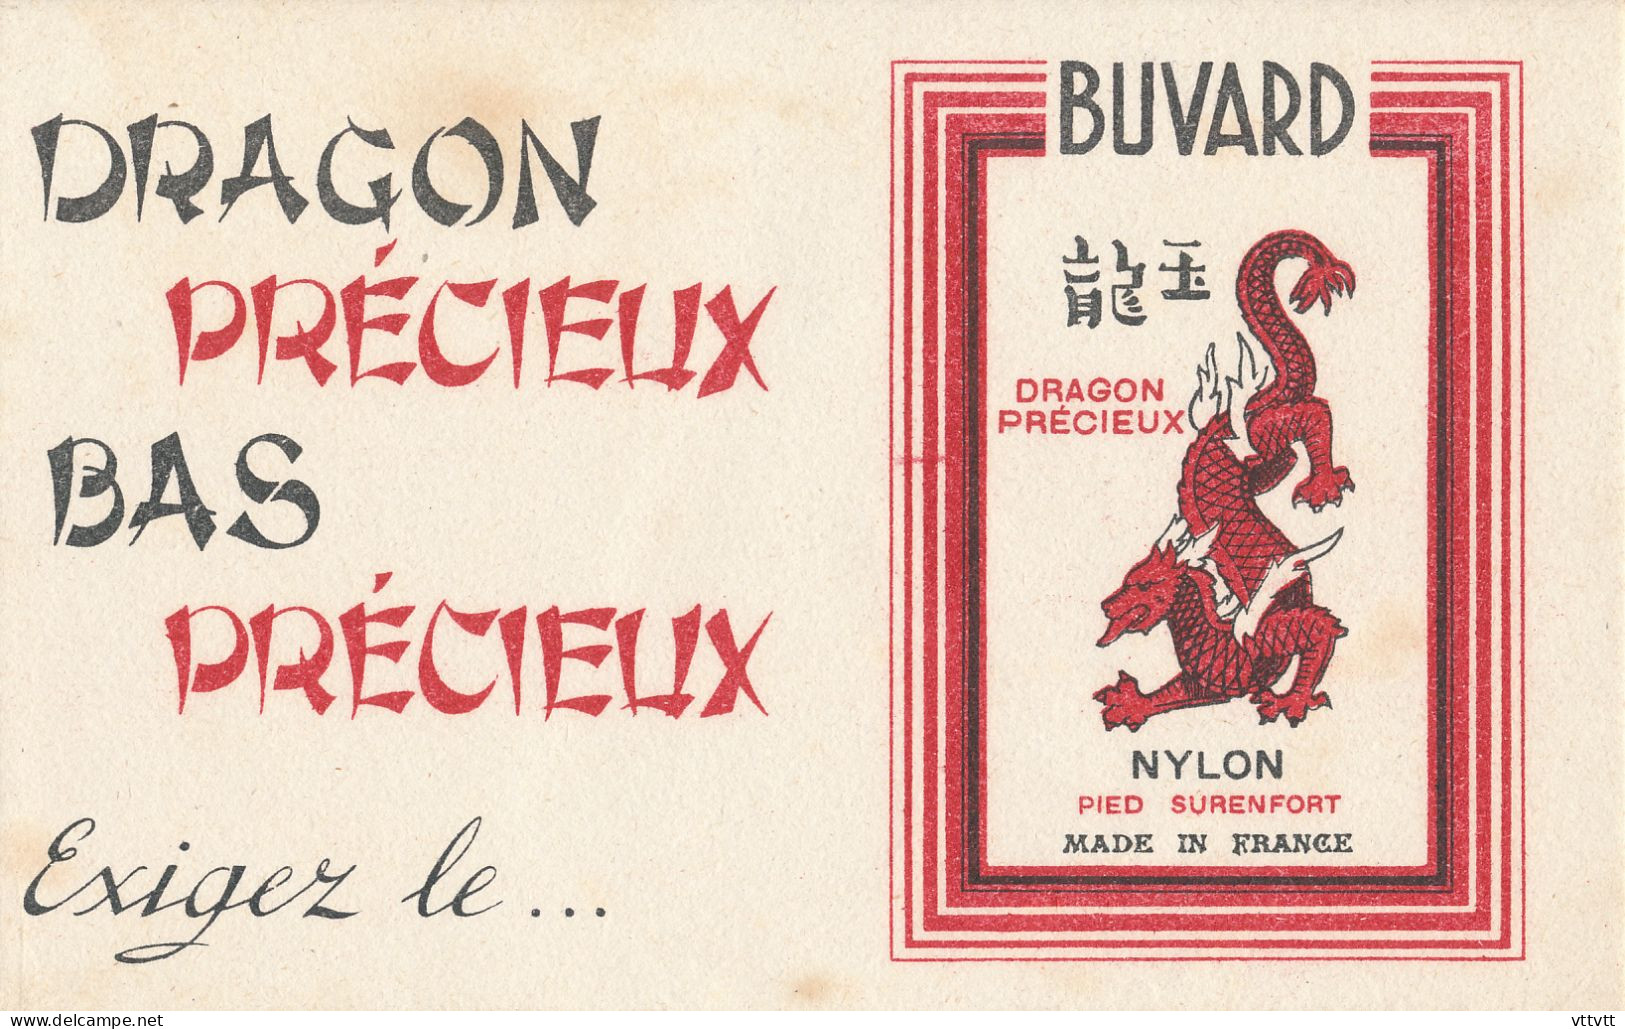 Ancien Buvard : Bas Nylon "Dragon Précieux, Bas Précieux, Exigez Le..." Pied Surenfort, Made In France - Textile & Vestimentaire